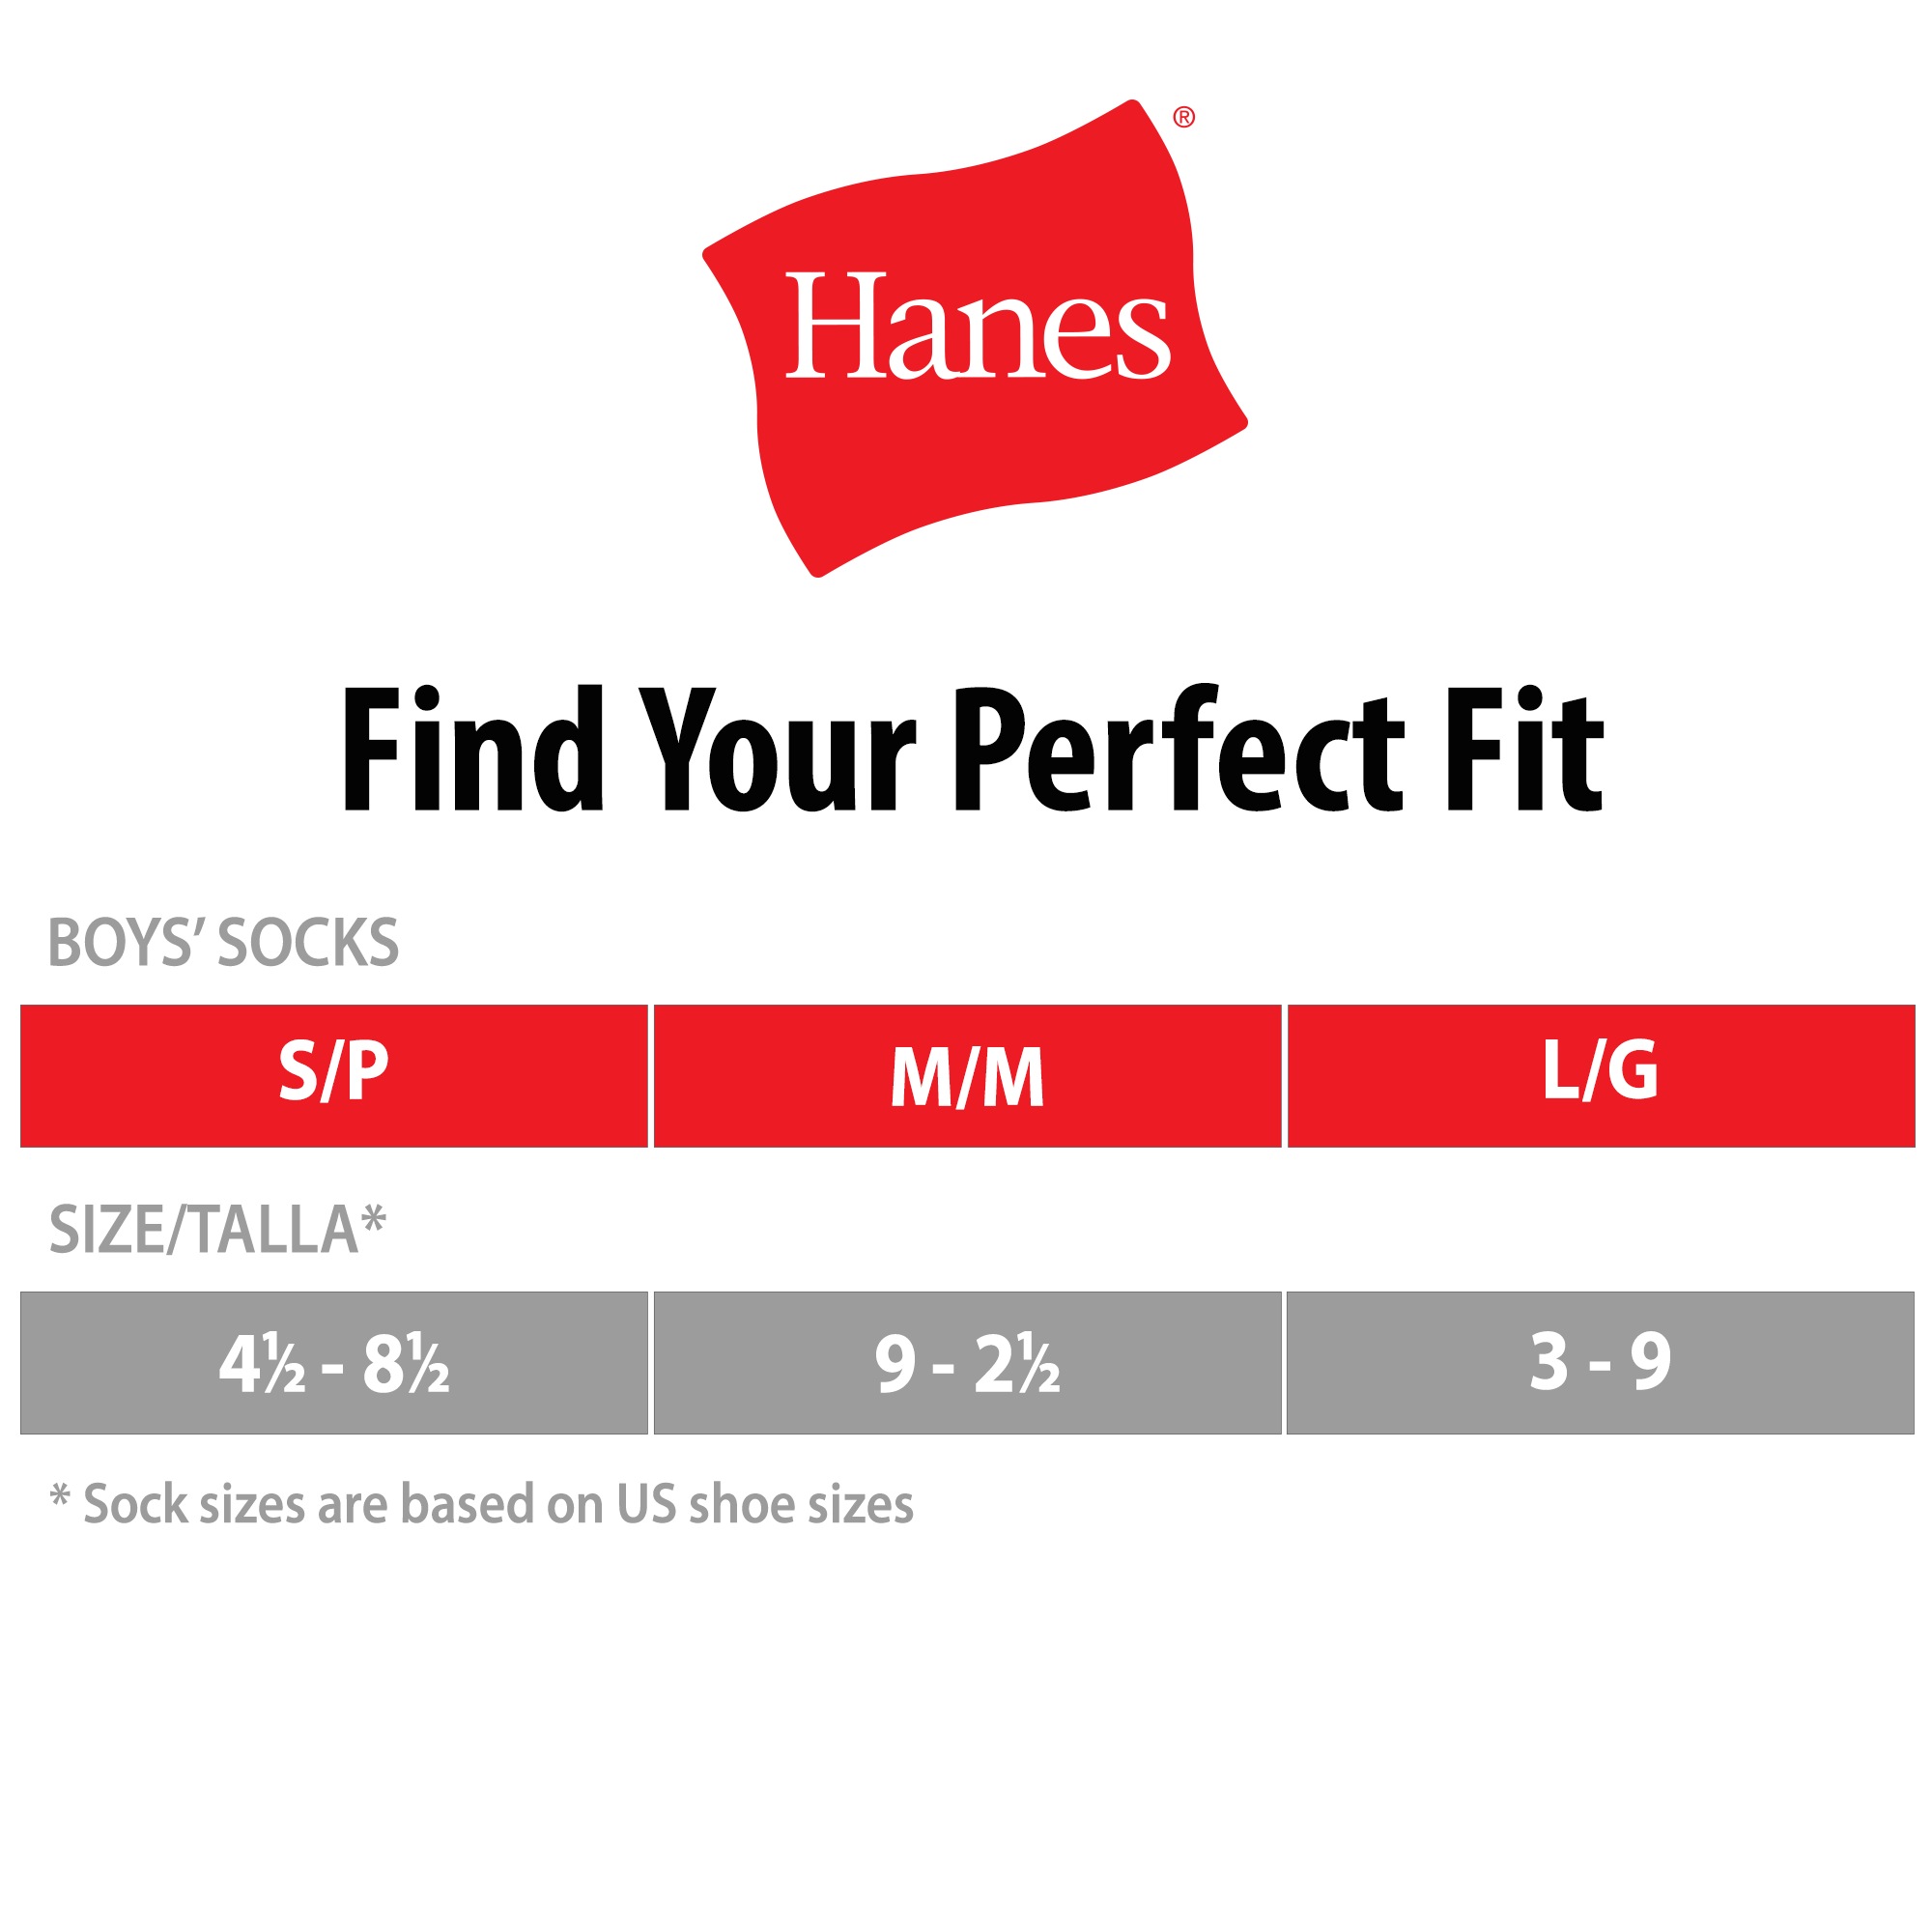 Hanes Boys Socks, 6 Pack Crew Socks Sizes S - L - image 4 of 4